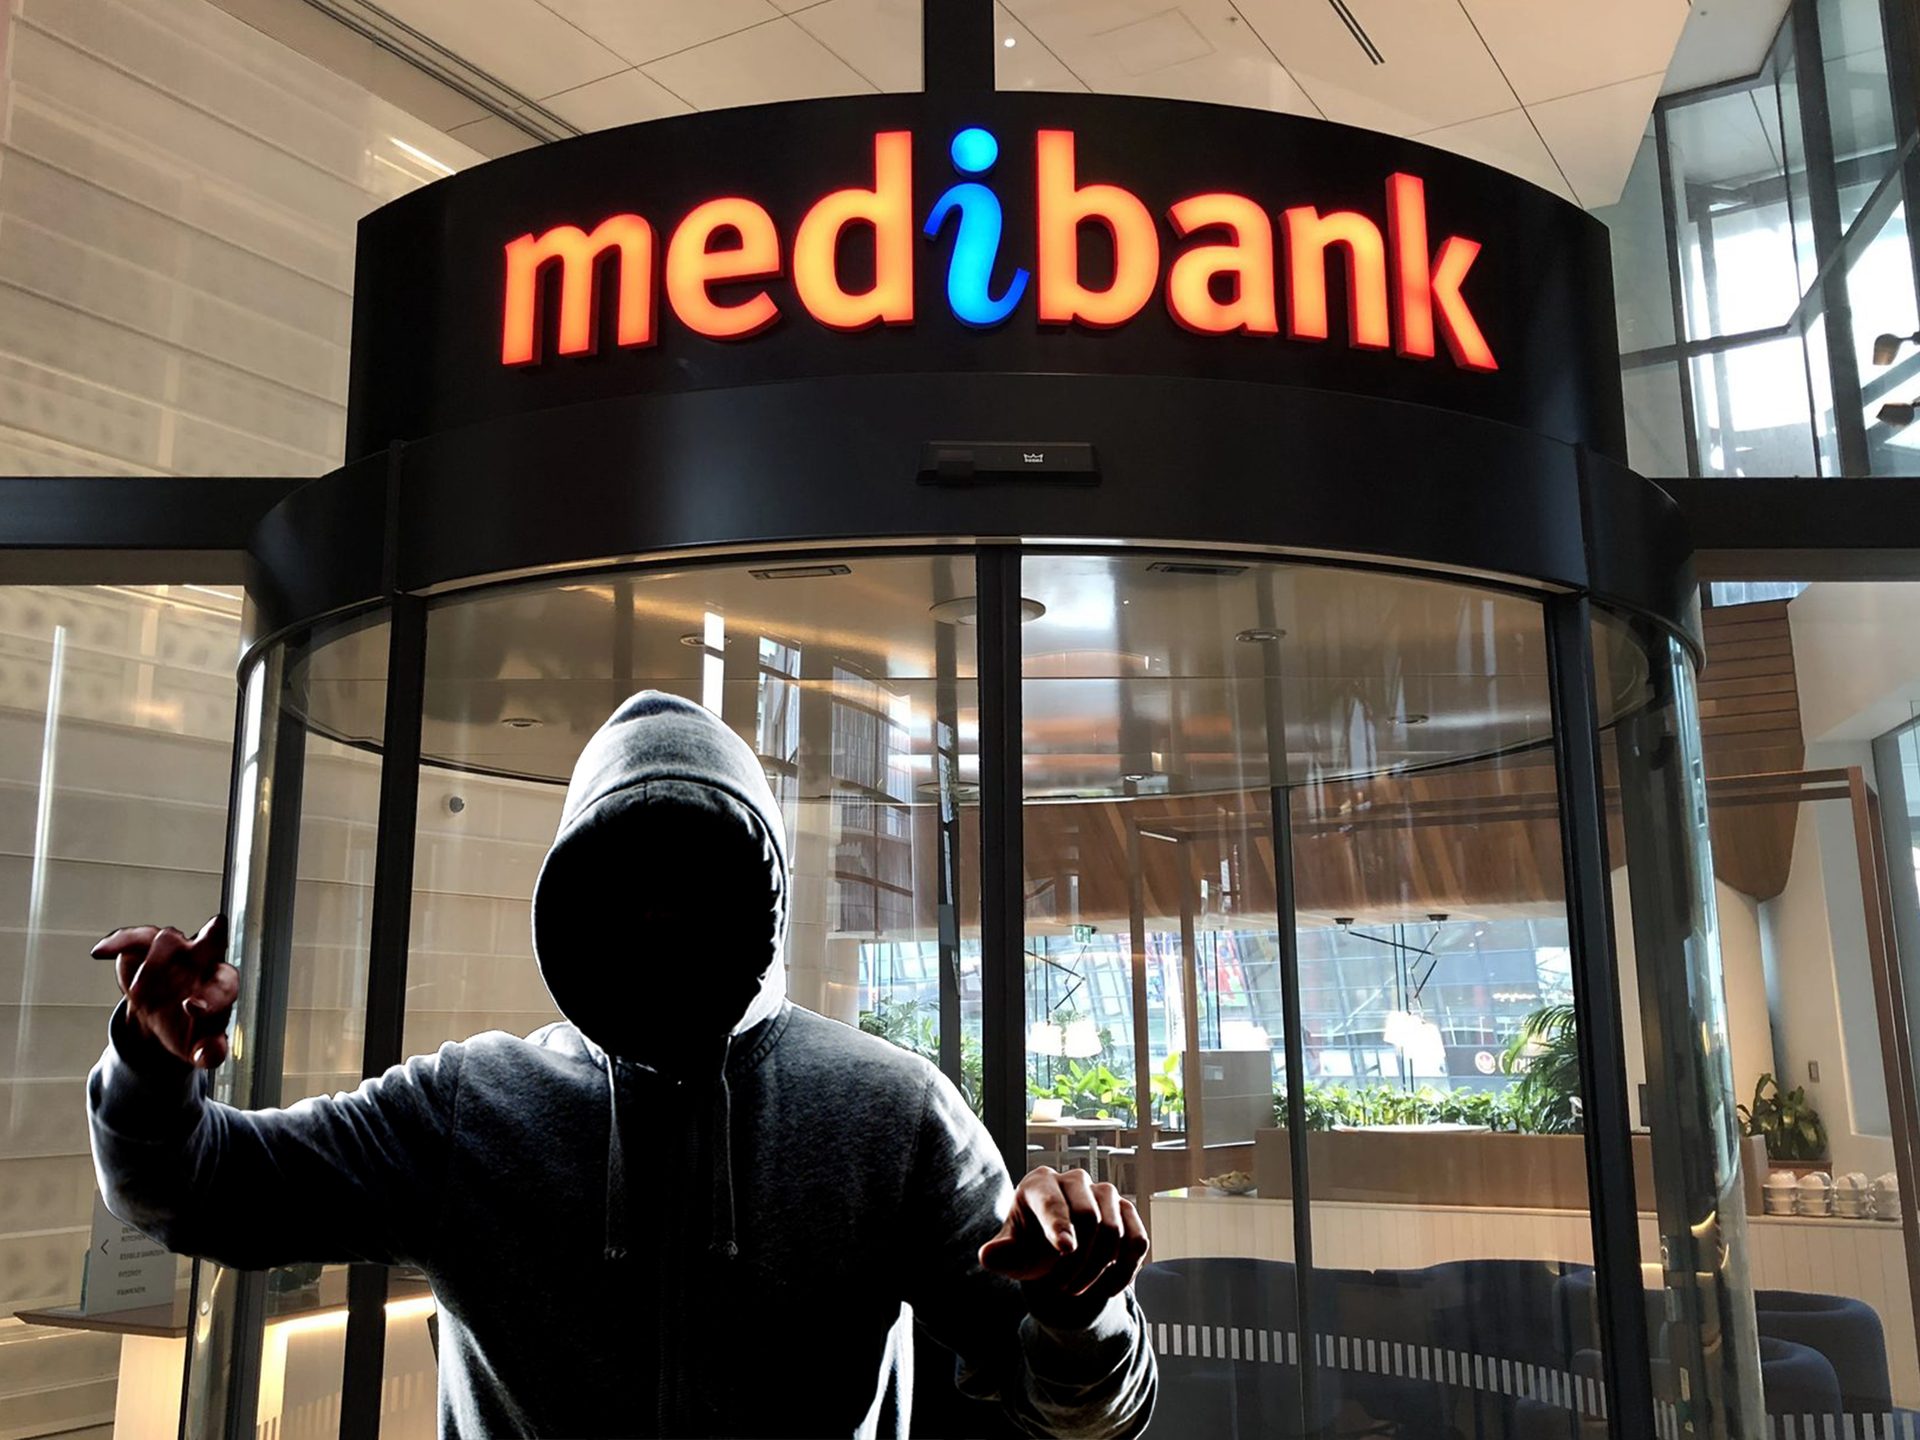 وأوضح الدعوى الجماعية في Medibank: تذكر خرق بيانات Medibank ، وانضم إلى الدعوى الجماعية لخرق بيانات Medibank ، واحصل على تعويض Medibank يصل إلى 20,000 دولار.